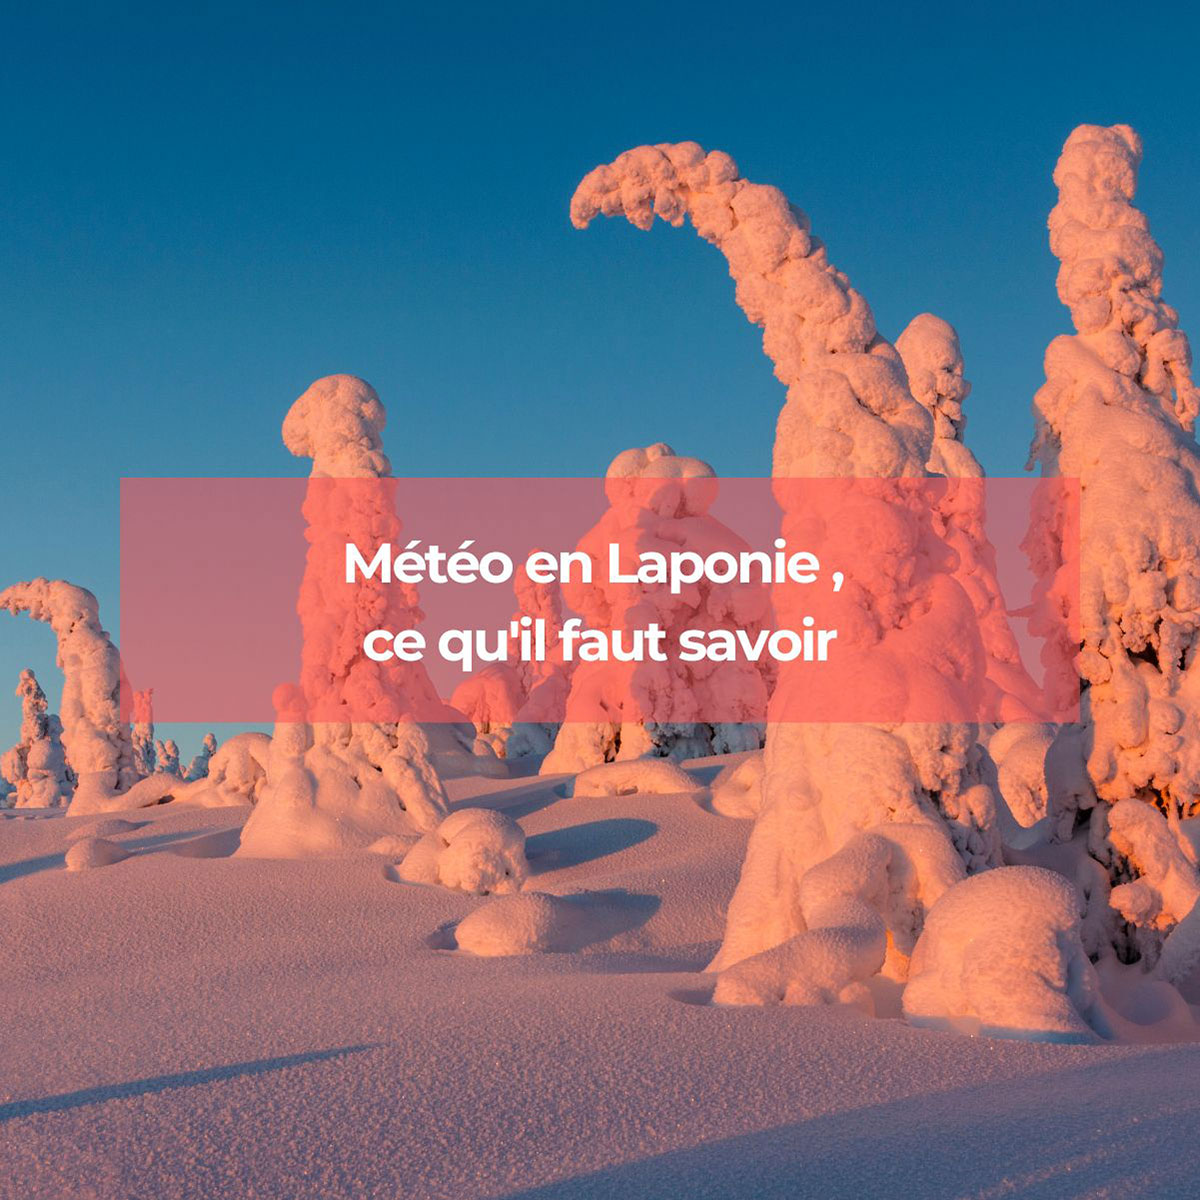 Météo en Laponie, ce qu'il faut savoir